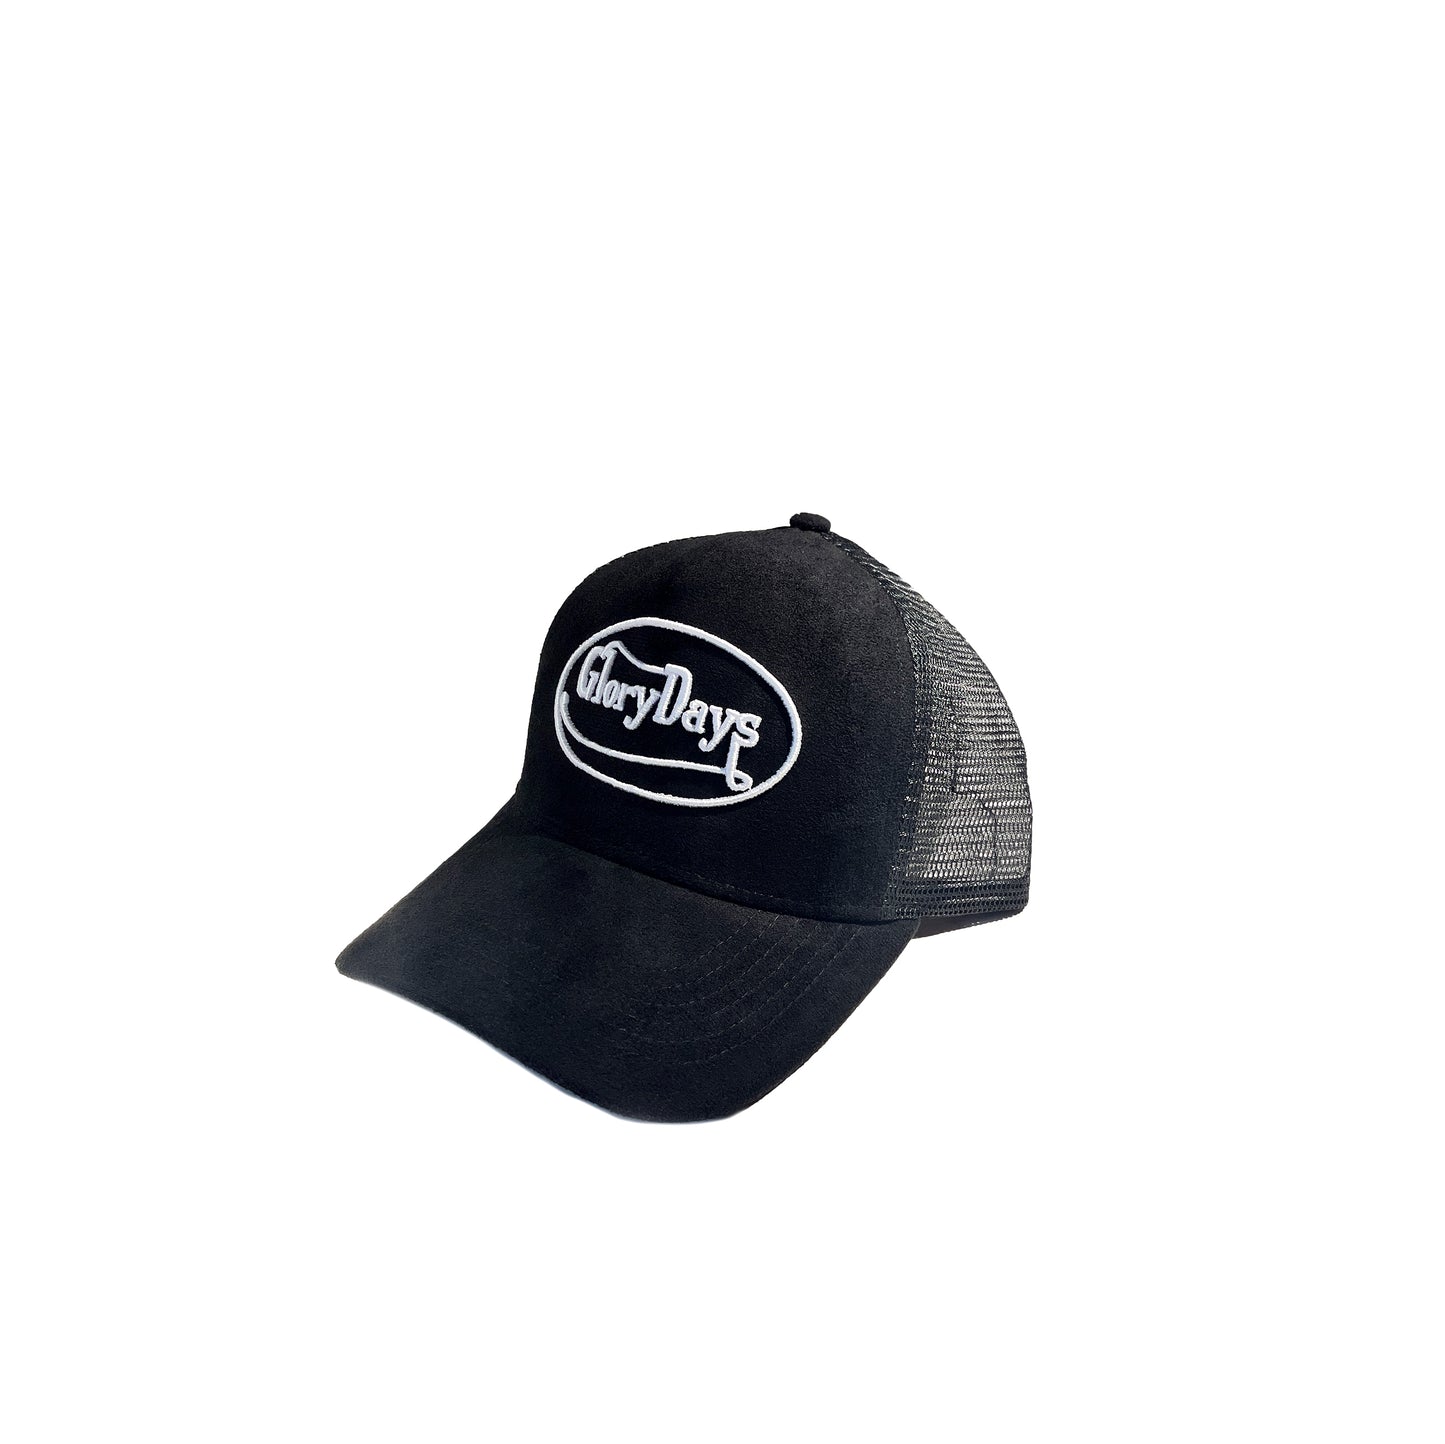 Glorydays "Dutchie" Suede Trucker Hat